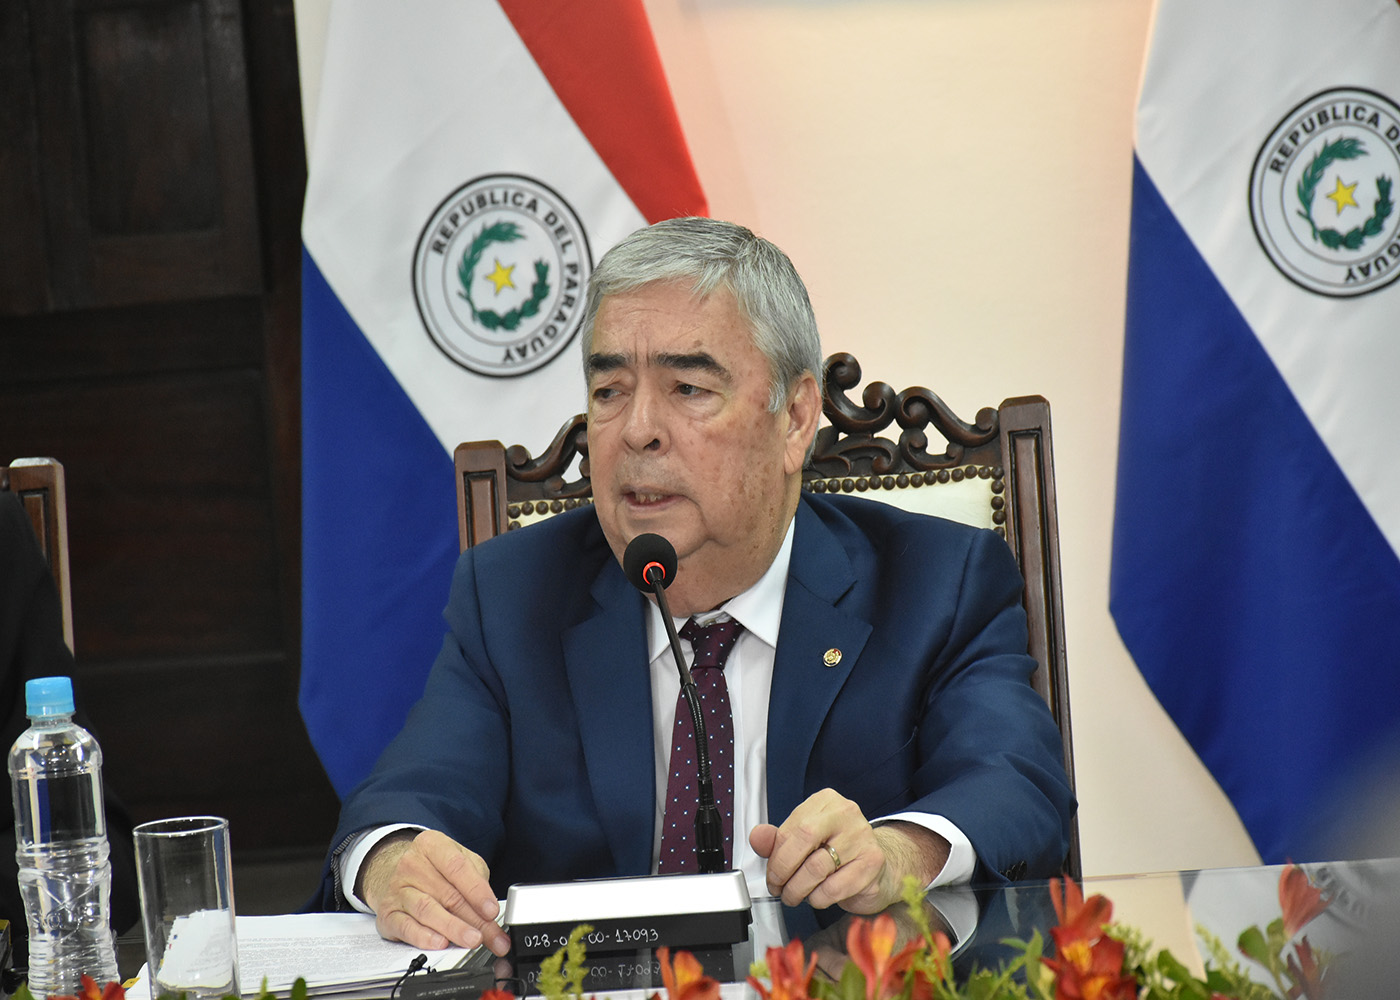 Acta bilateral es un logro para Paraguay y no implica aumento de tarifa ni pérdida de soberanía energética